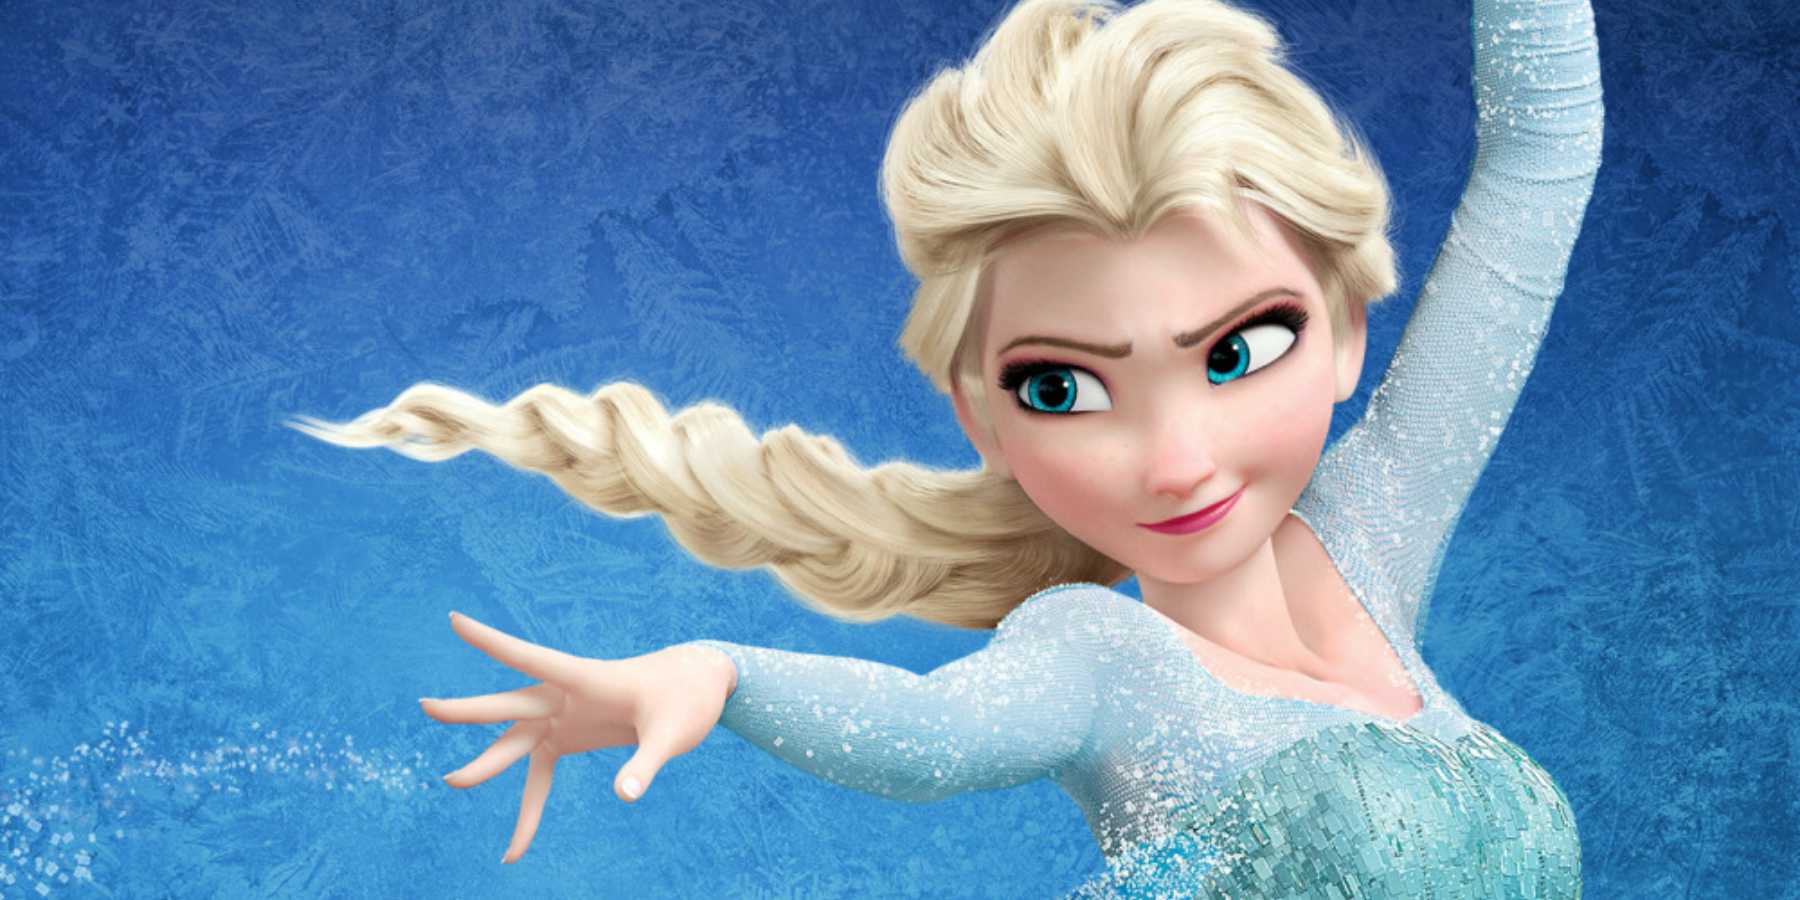 La directora de Frozen 2 no descarta que Elsa tenga novia